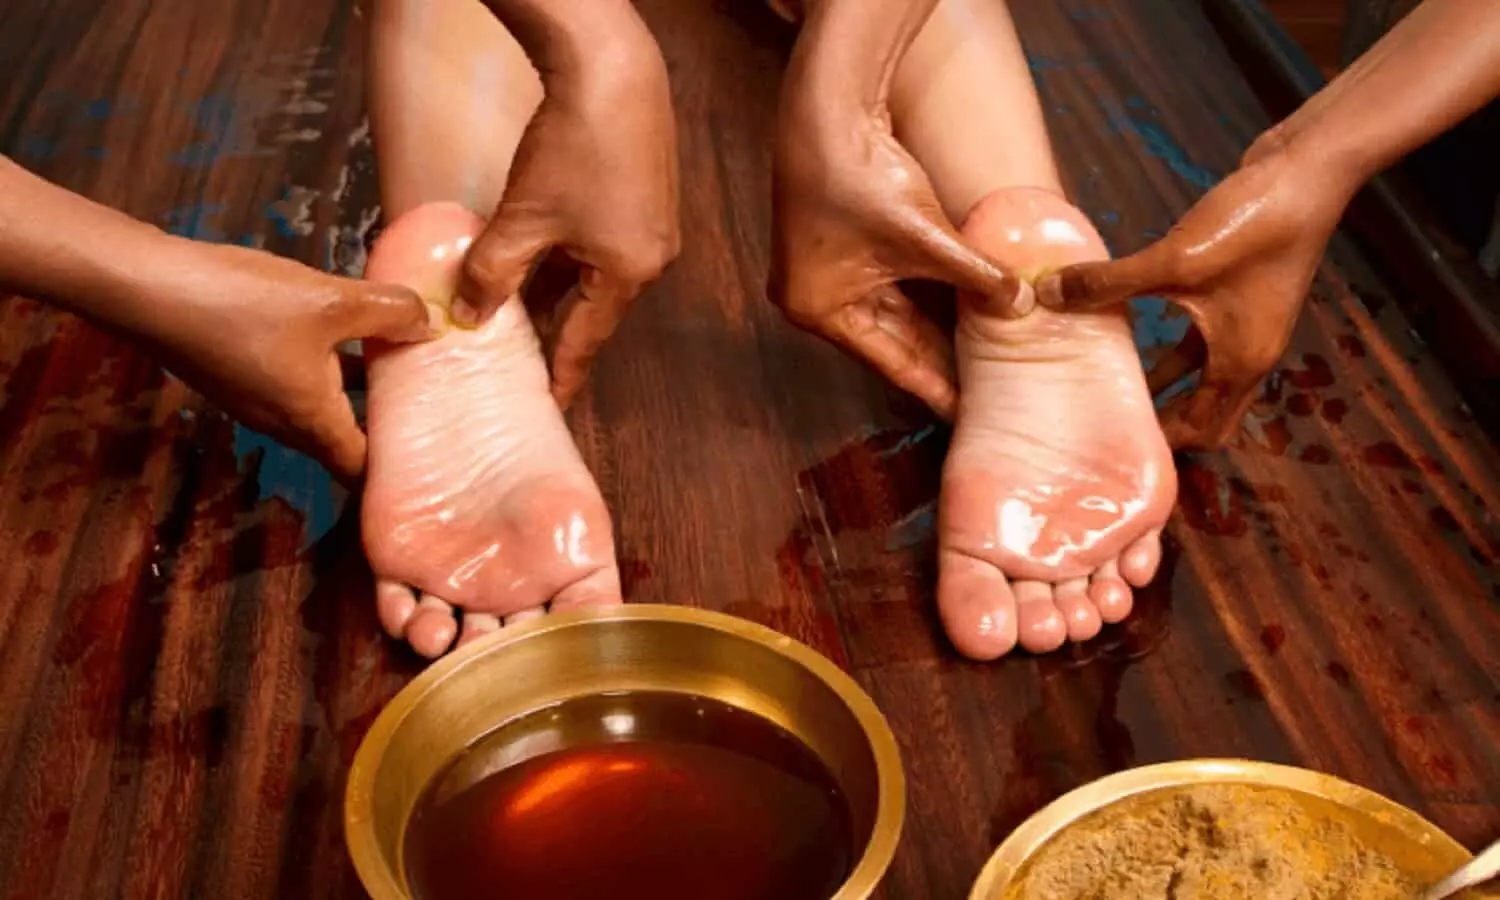 Foot Massage Benefits: पैर के तलवों में लगाएं सरसों का तेल, करें मालिश मिलेंगे जबरदस्त फायदे